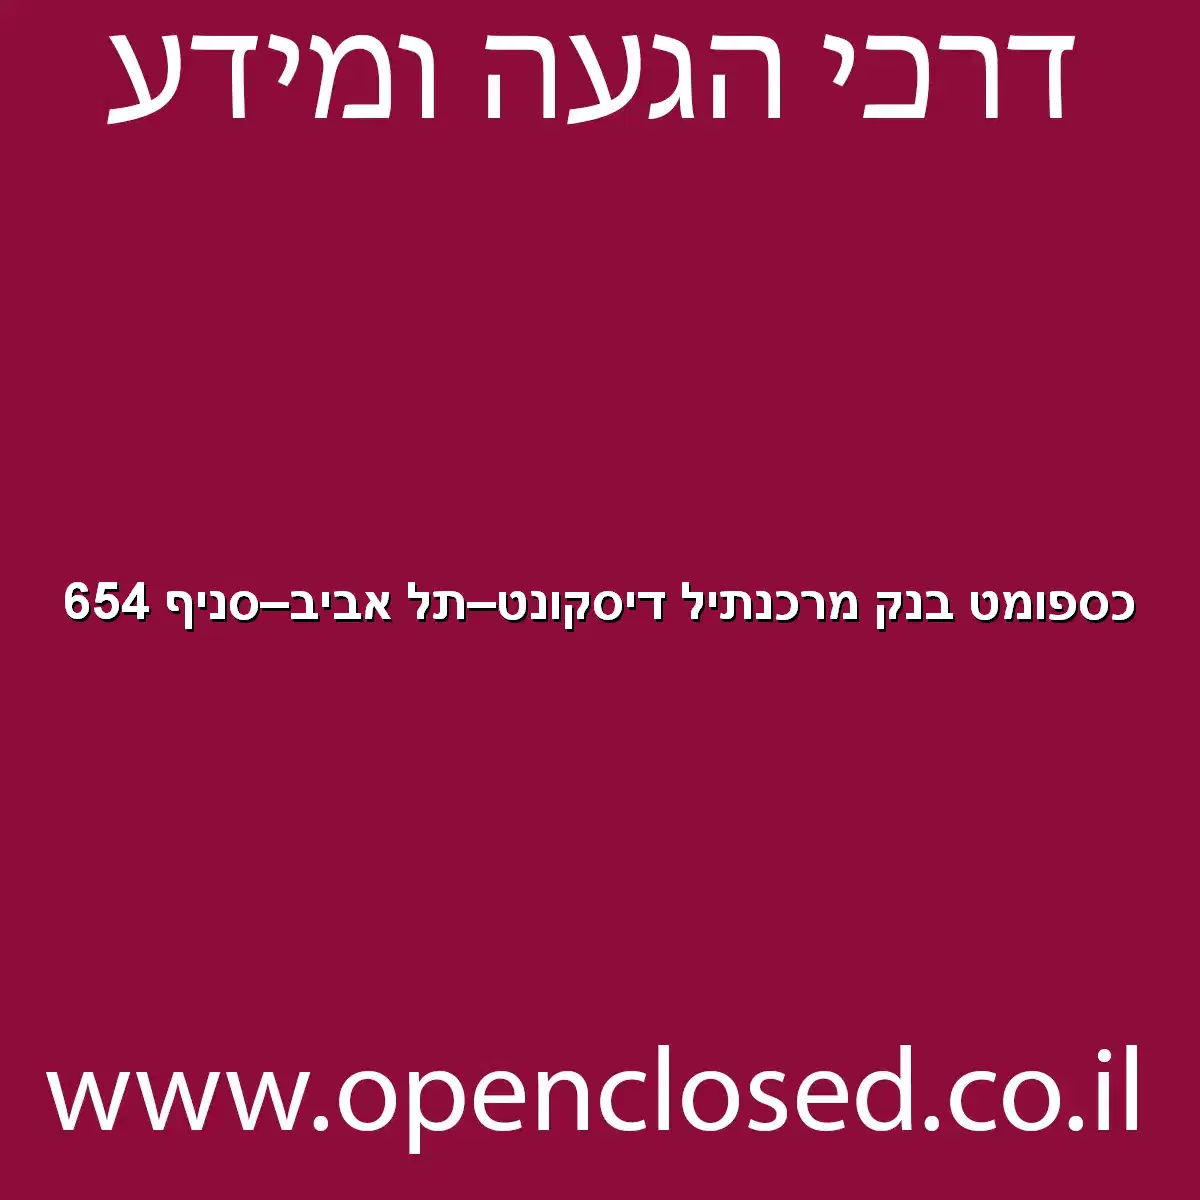 כספומט בנק מרכנתיל דיסקונט תל אביב סניף 654